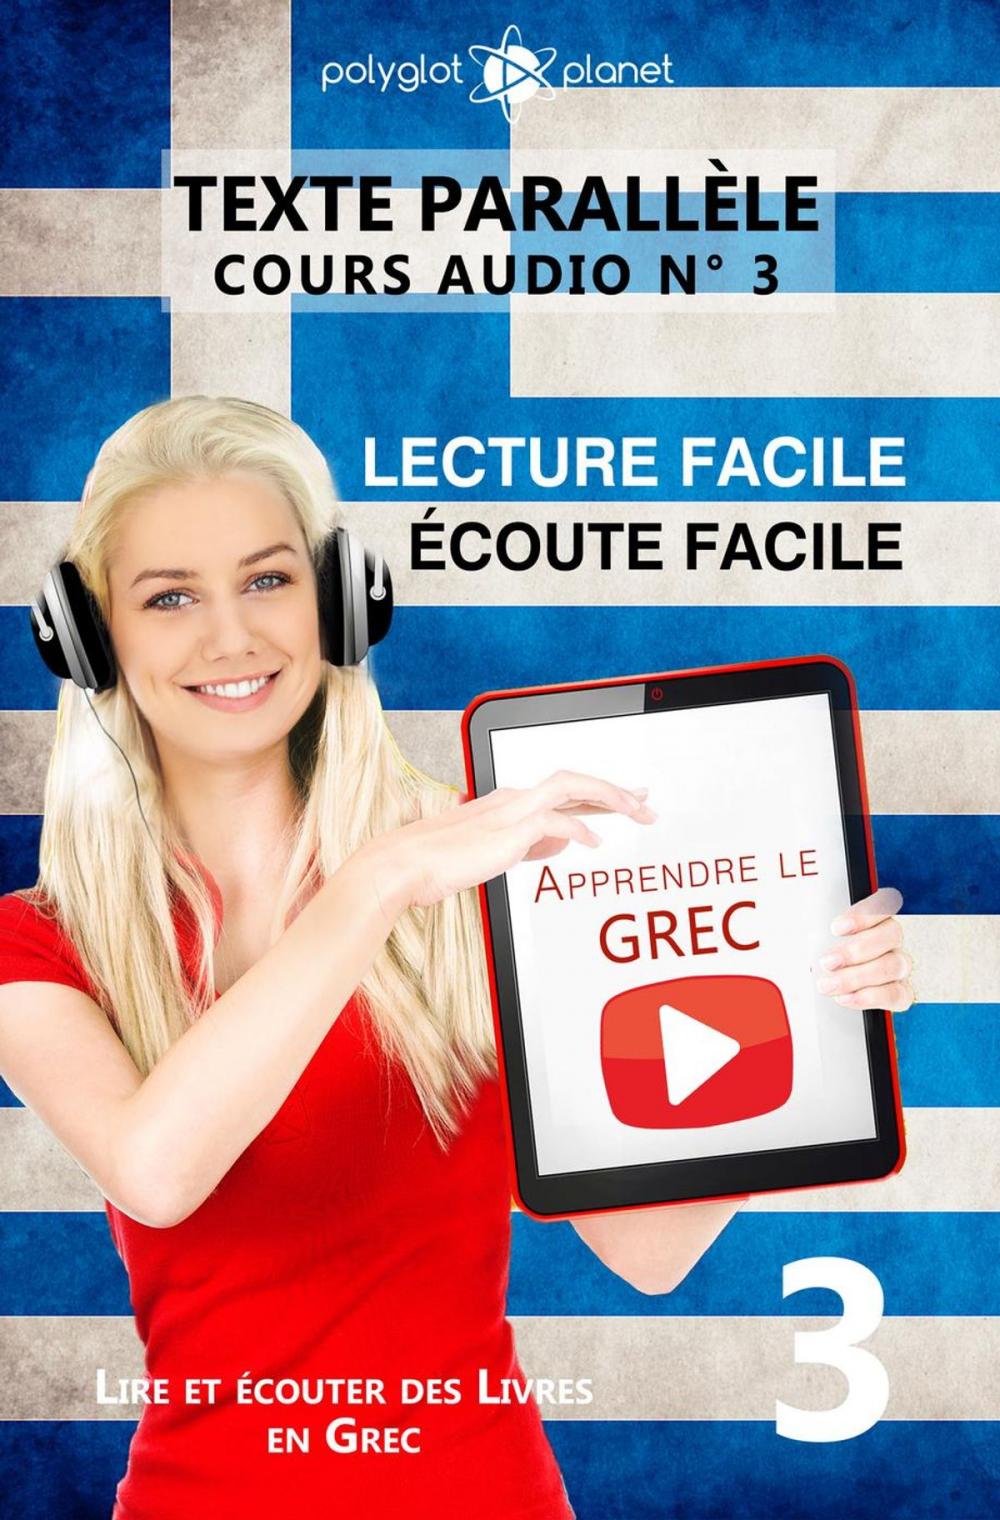 Big bigCover of Apprendre le grec | Écoute facile | Lecture facile | Texte parallèle COURS AUDIO N° 3